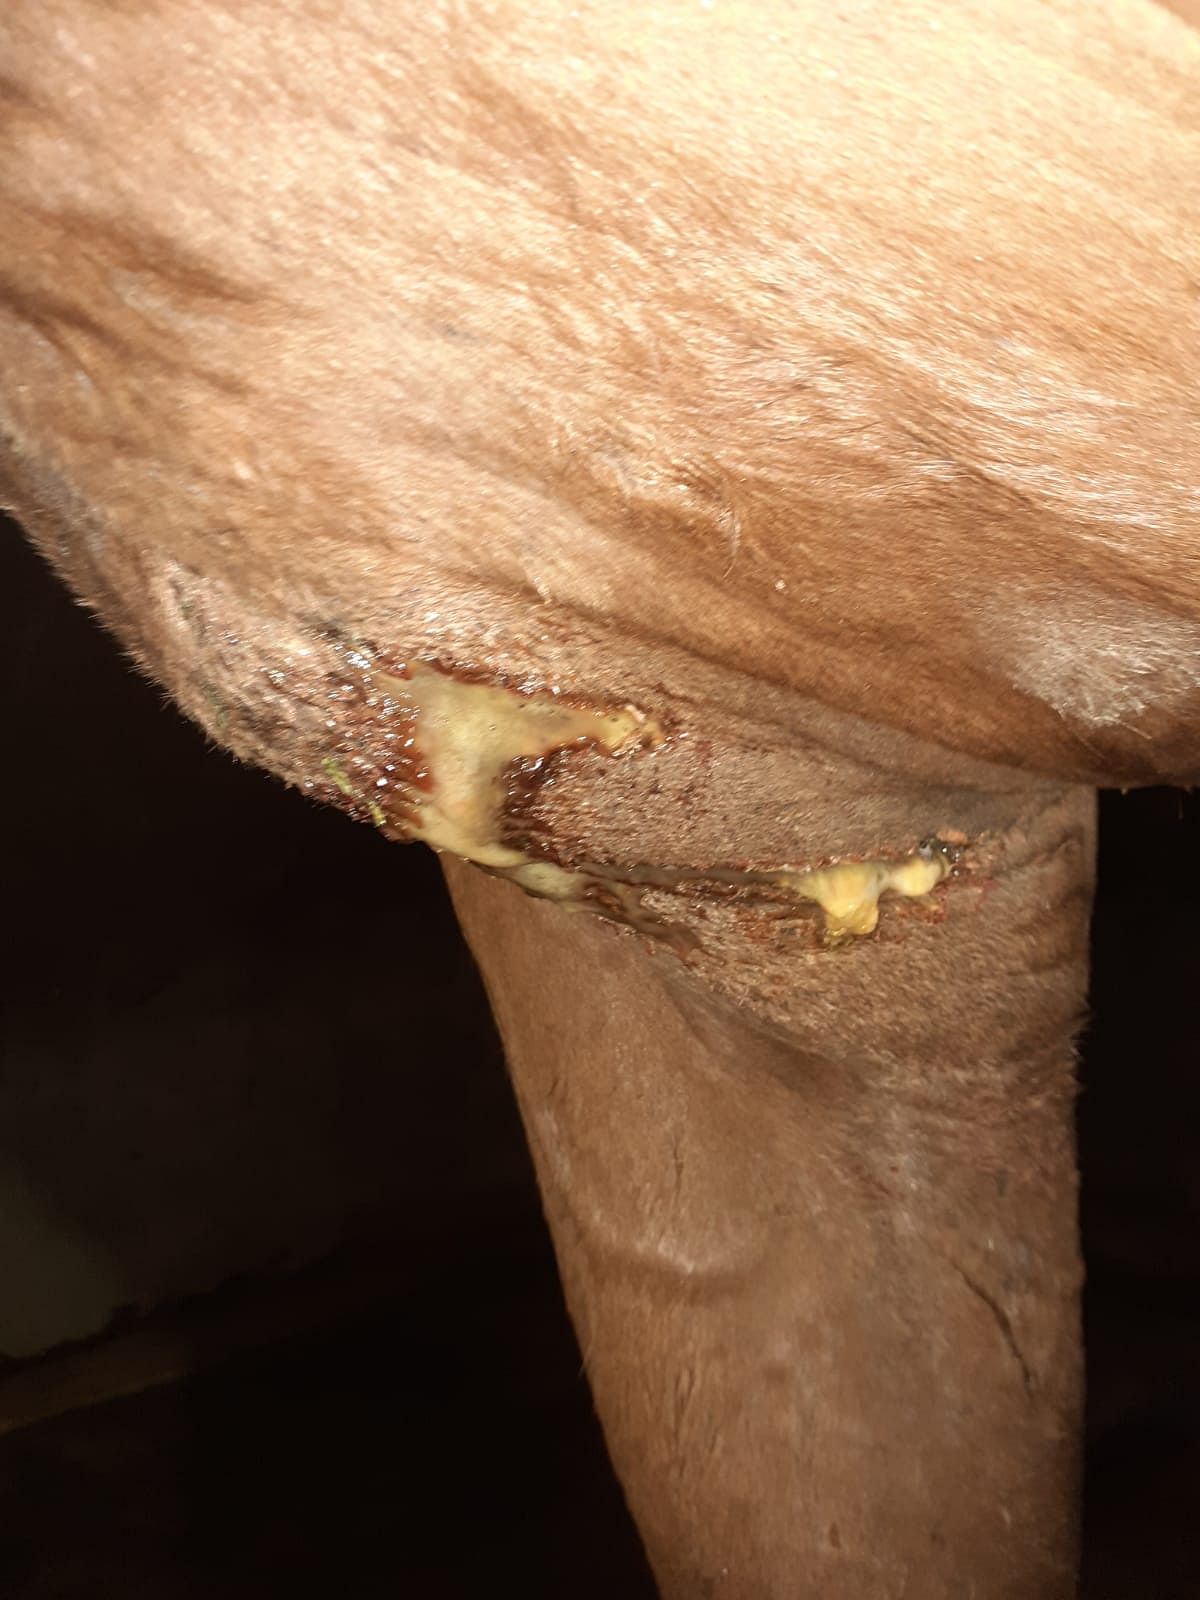 Muru-tamman haavasta tuli litrakaupalla eritettä, mutta se ei ottanut parantuakseen normaalilla antibioottihoidolla.